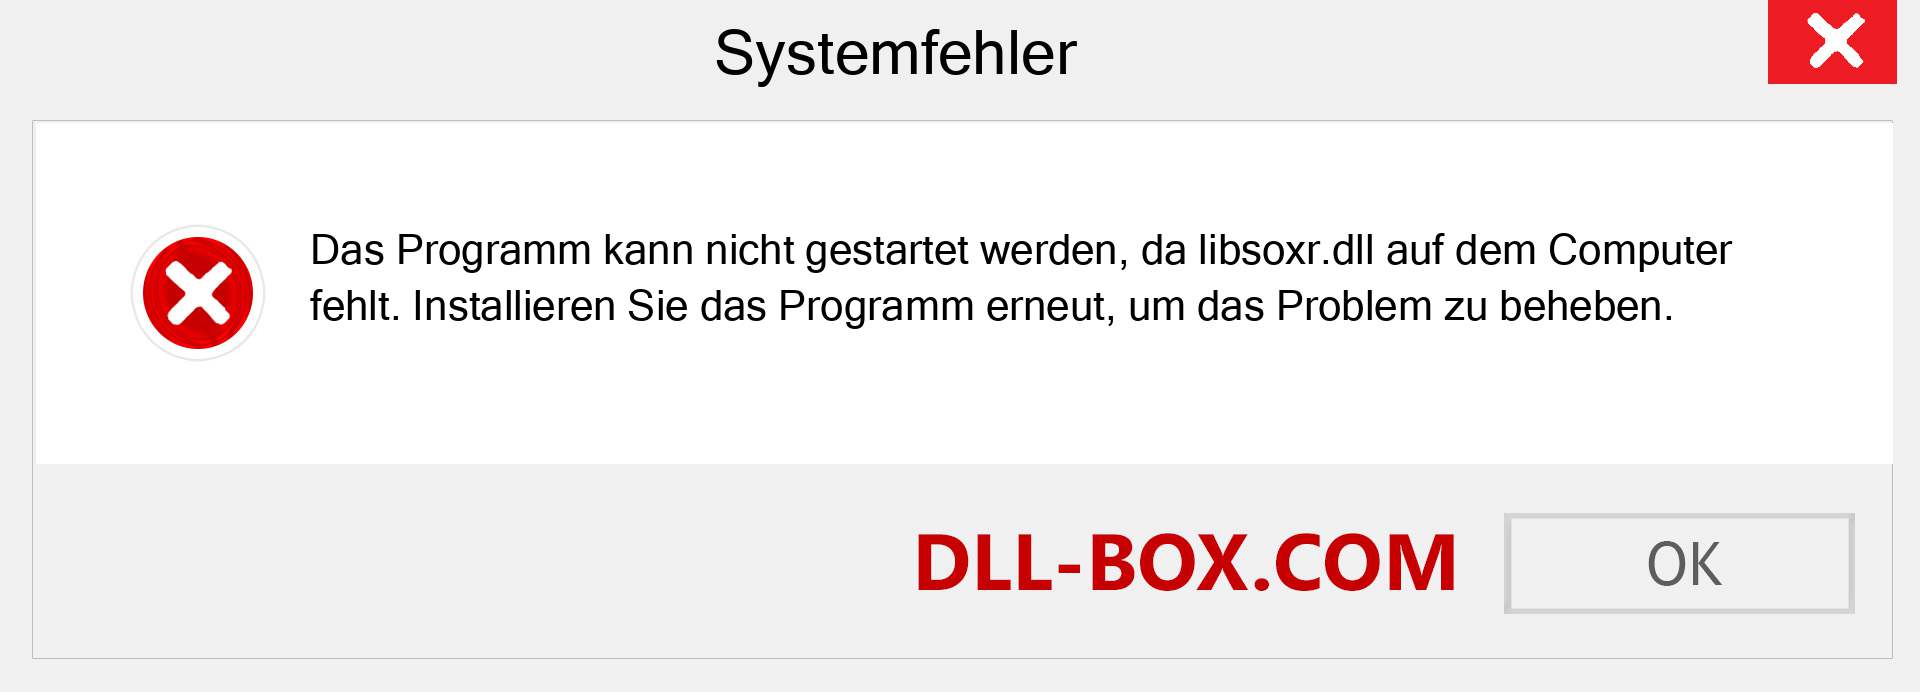 libsoxr.dll-Datei fehlt?. Download für Windows 7, 8, 10 - Fix libsoxr dll Missing Error unter Windows, Fotos, Bildern